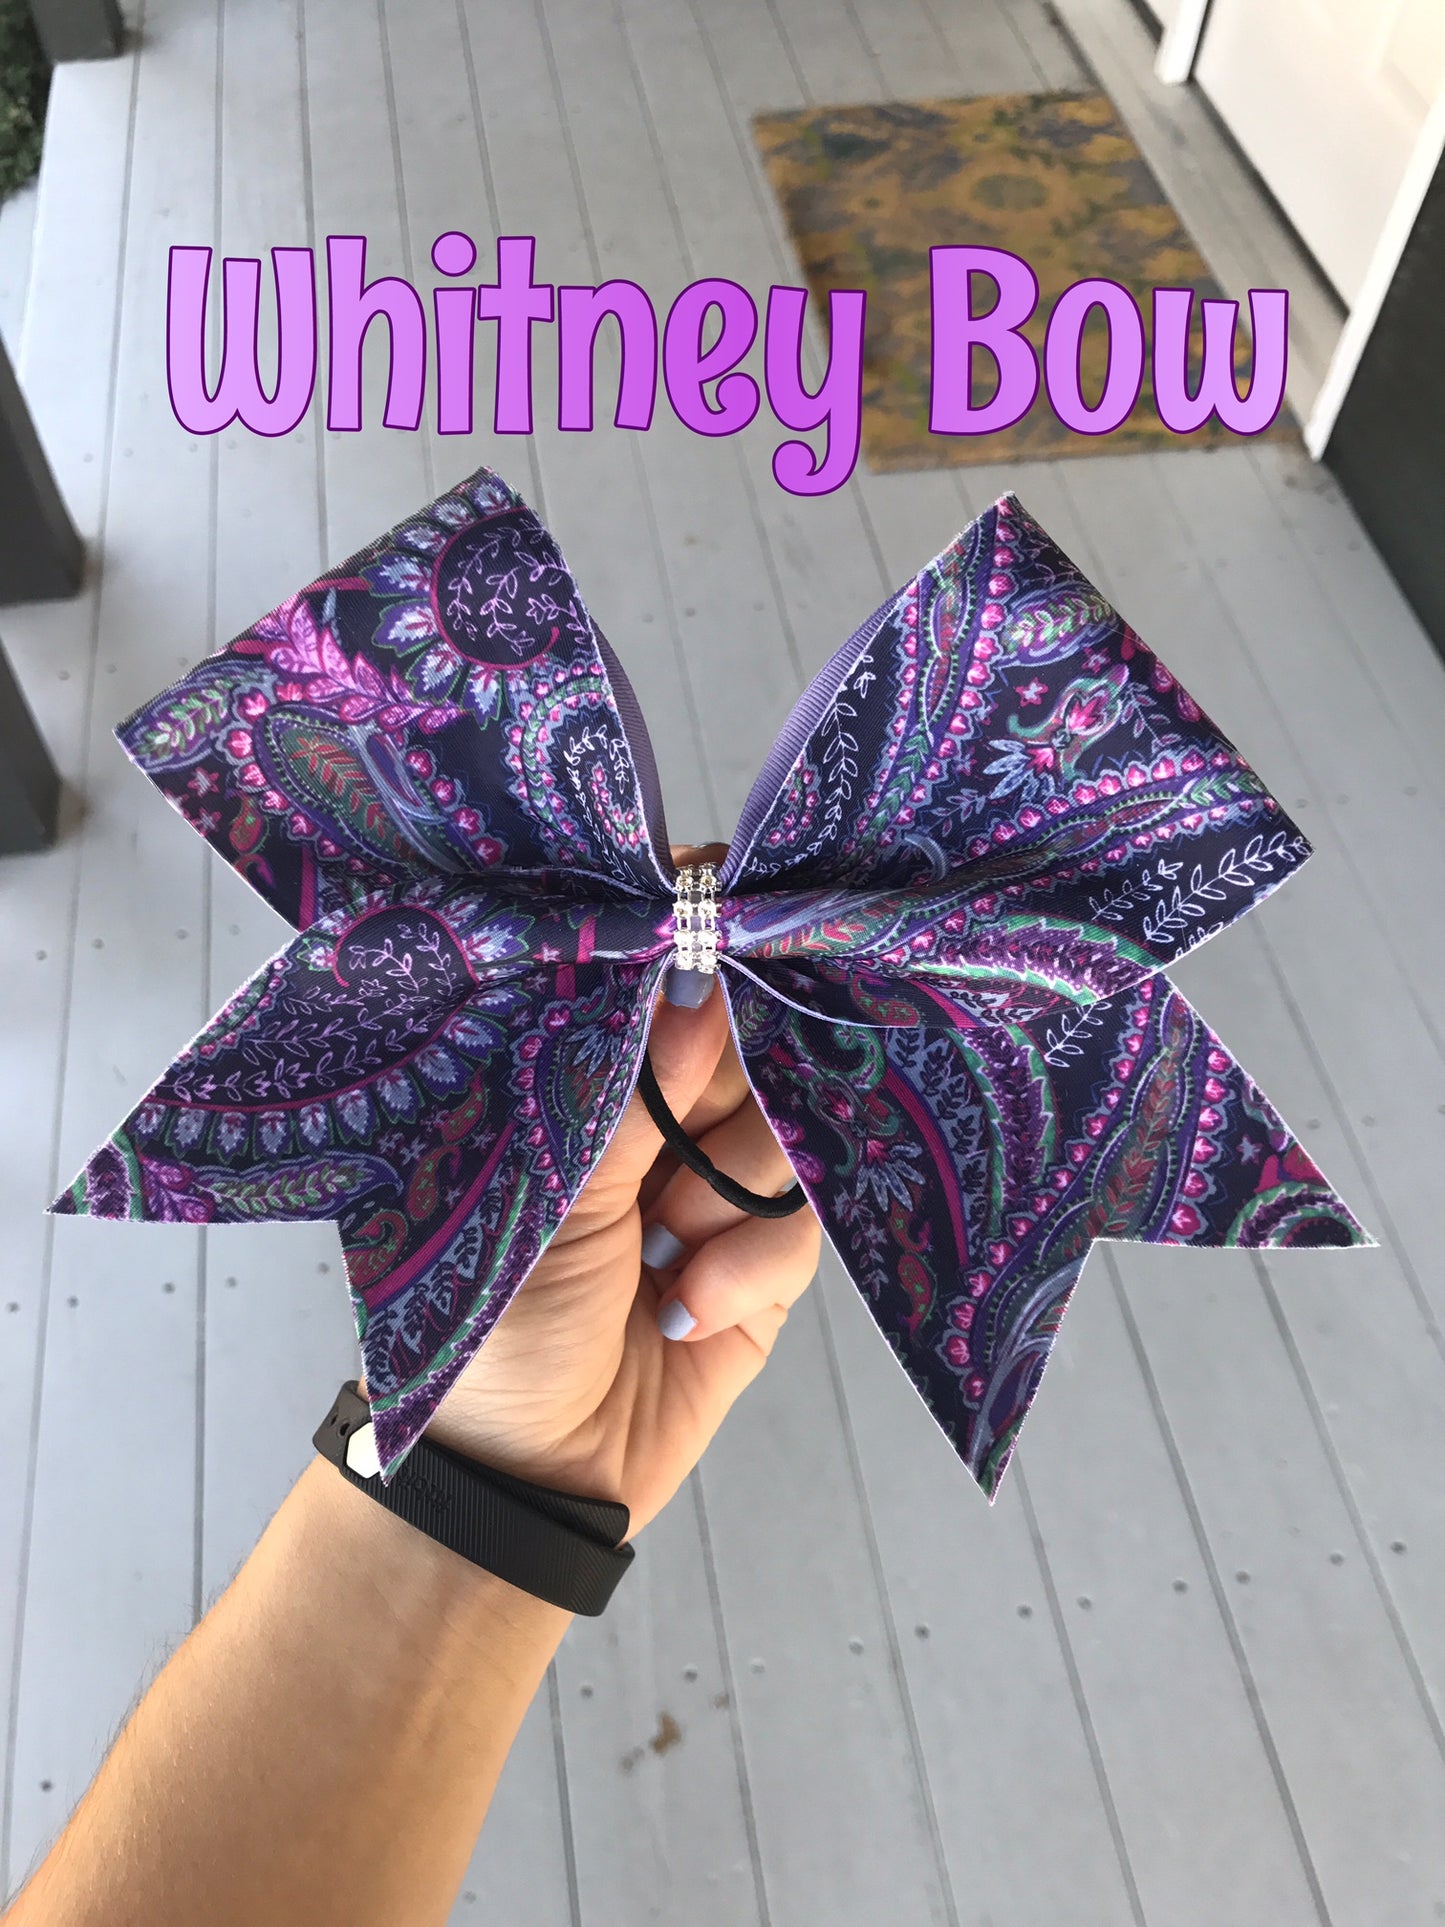 Whitney Bow